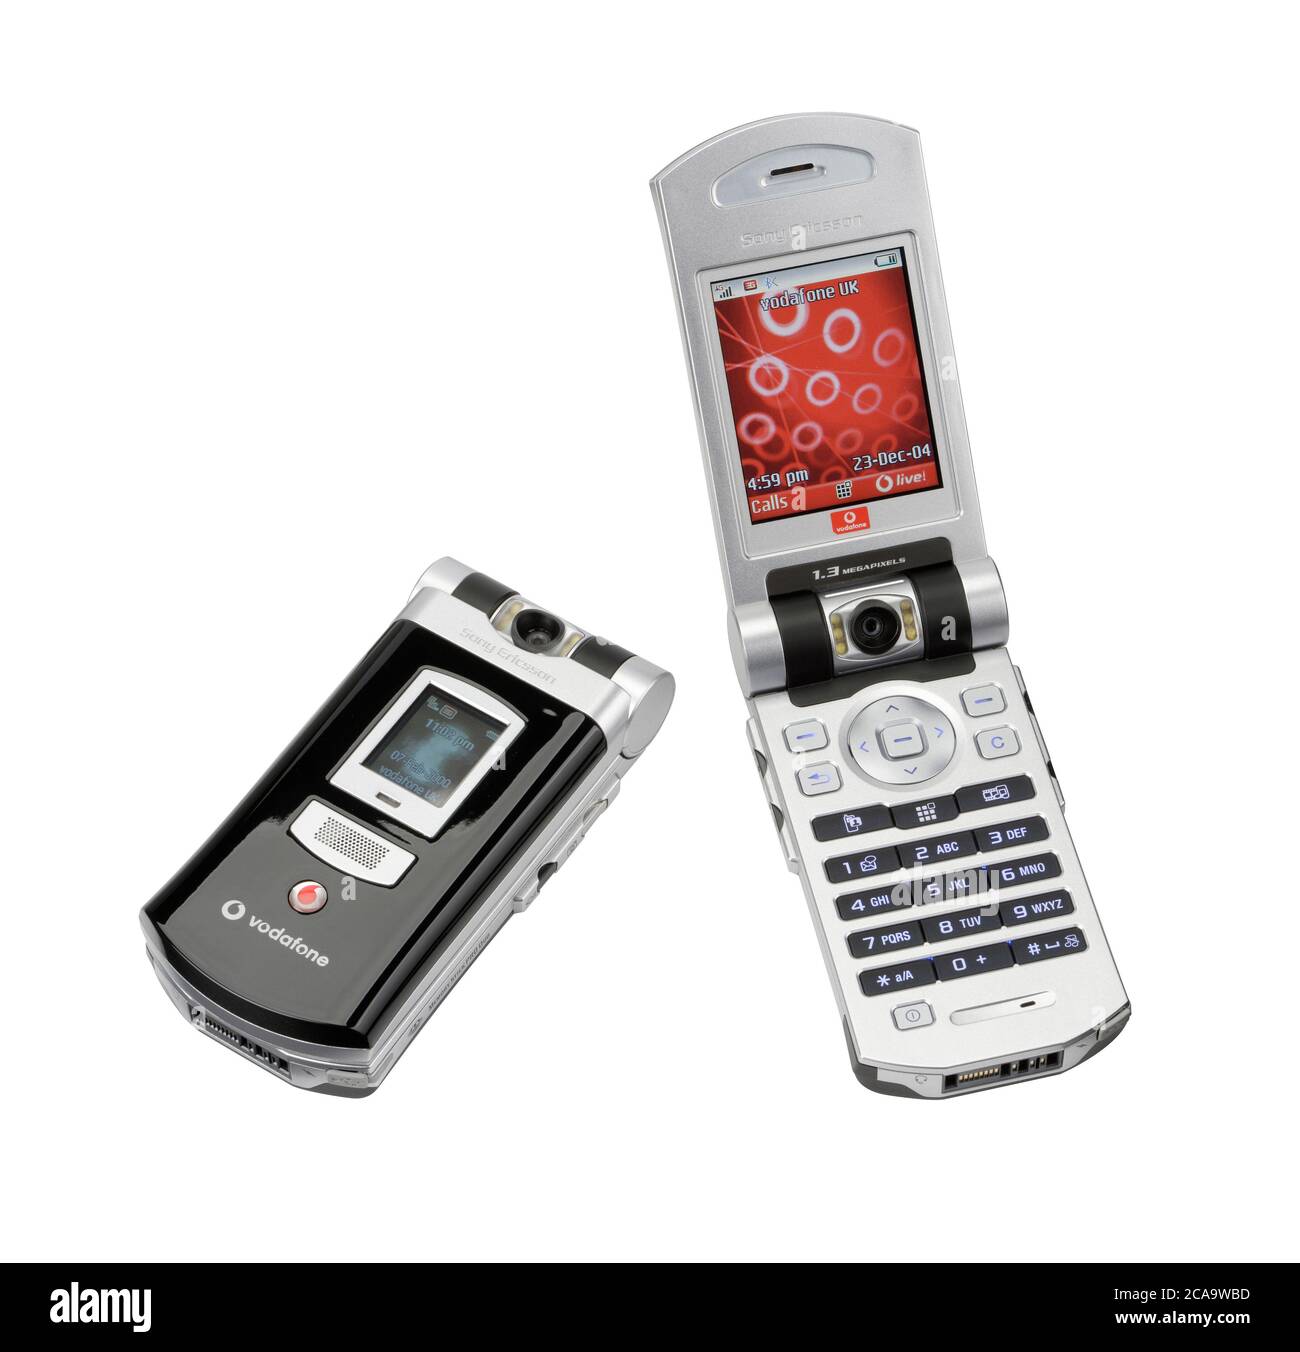 Ein Mobiltelefon von Sony Ericsson aus dem Jahr 2004. Vodafone-Telefon mit Vertrag, das einen Klappmechanismus hat. Stockfoto